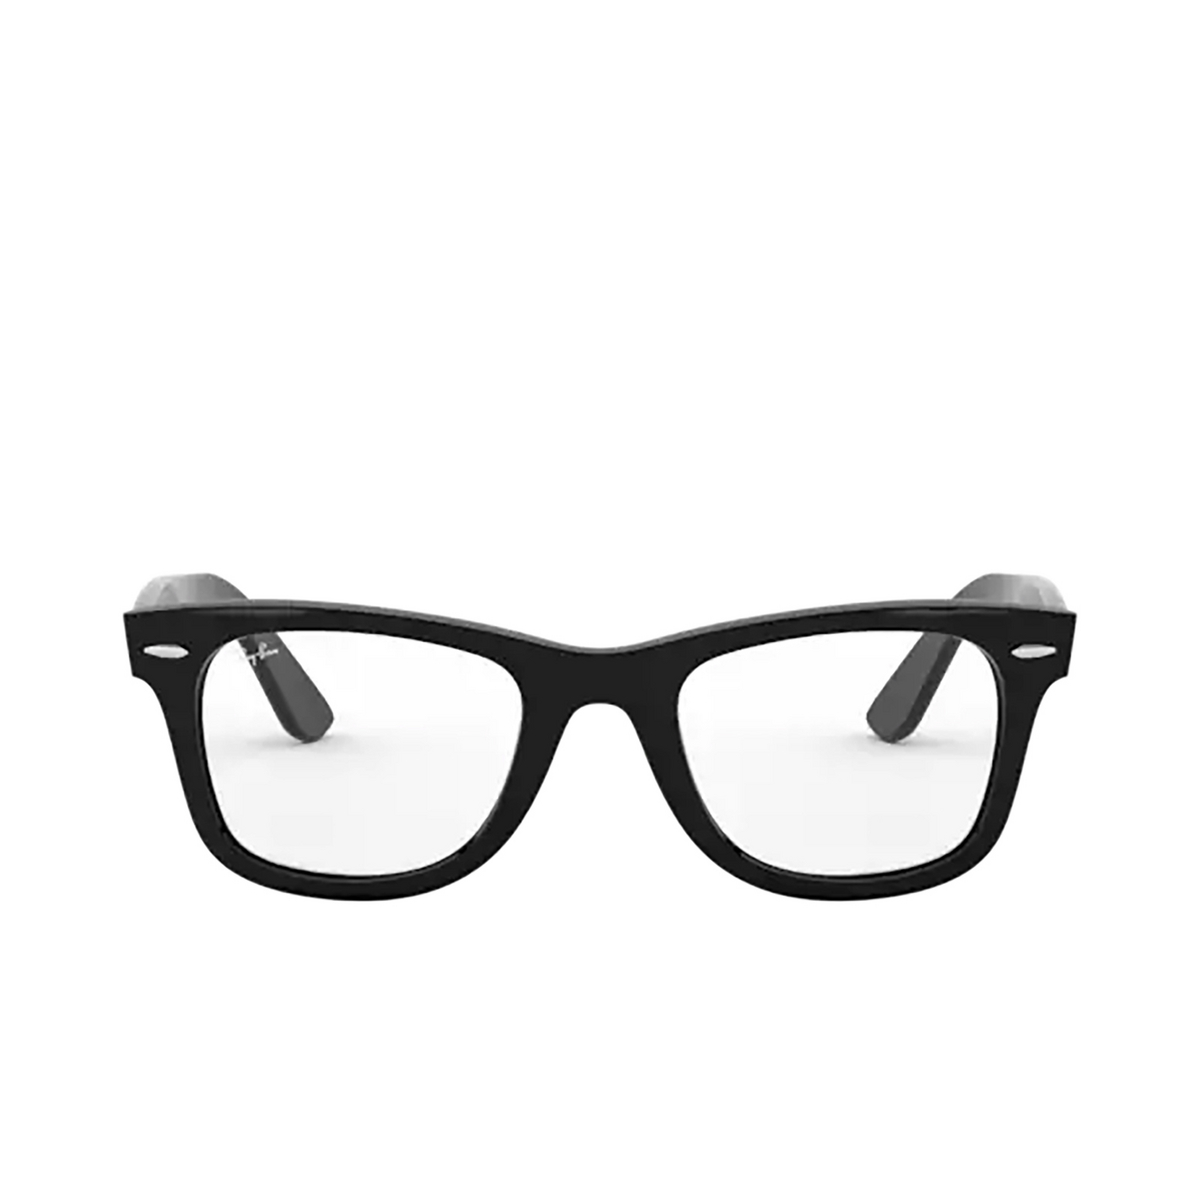 Ray-Ban WAYFARER EASE Eyeglasses 2000 BLACK - front view